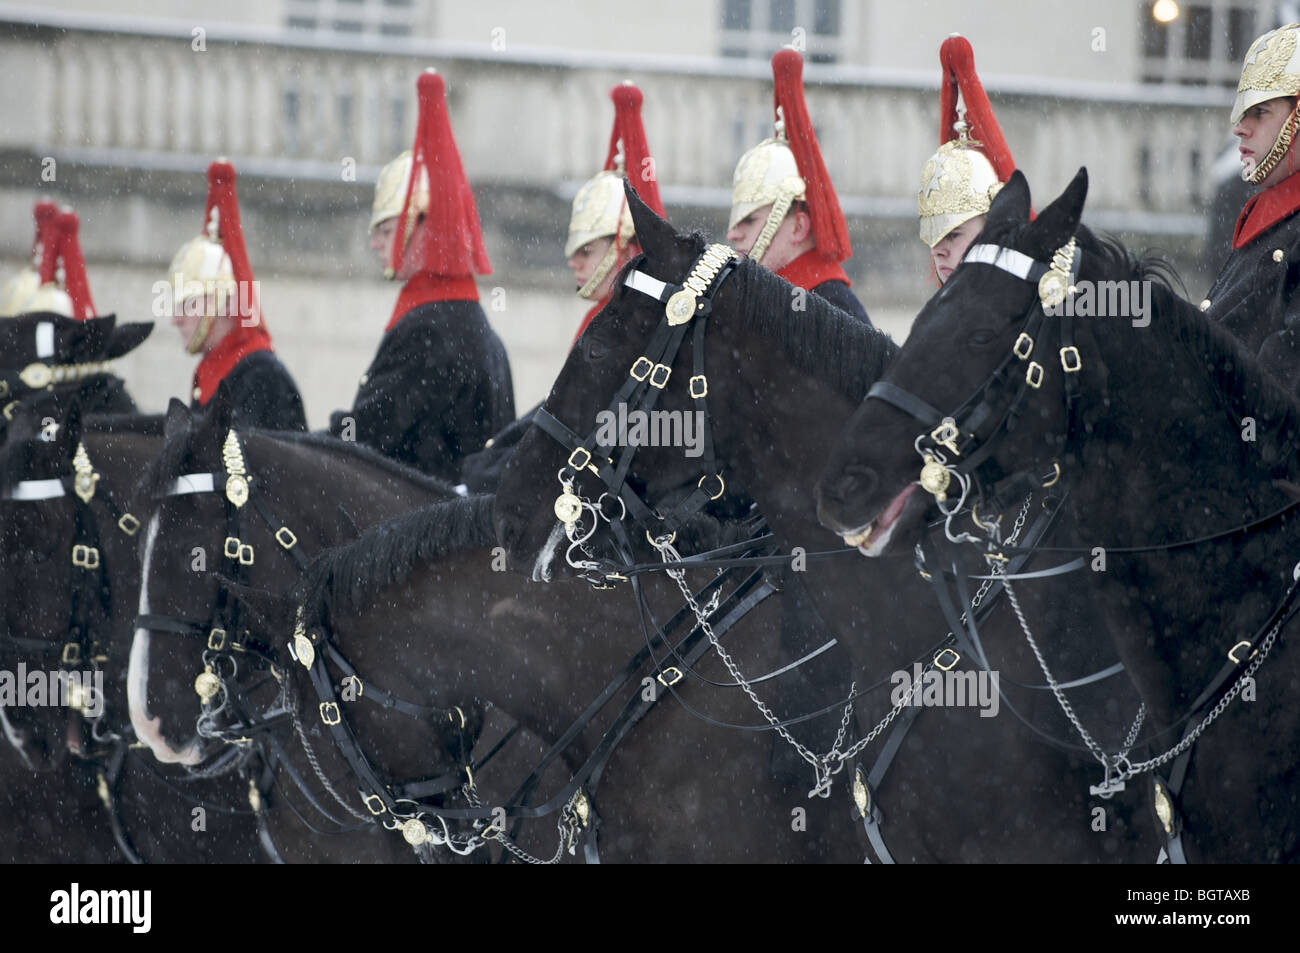 Le régiment de cavalerie de la Reine, du Blues et du Royals sur des chevaux dans la neige, Londres, Angleterre Banque D'Images